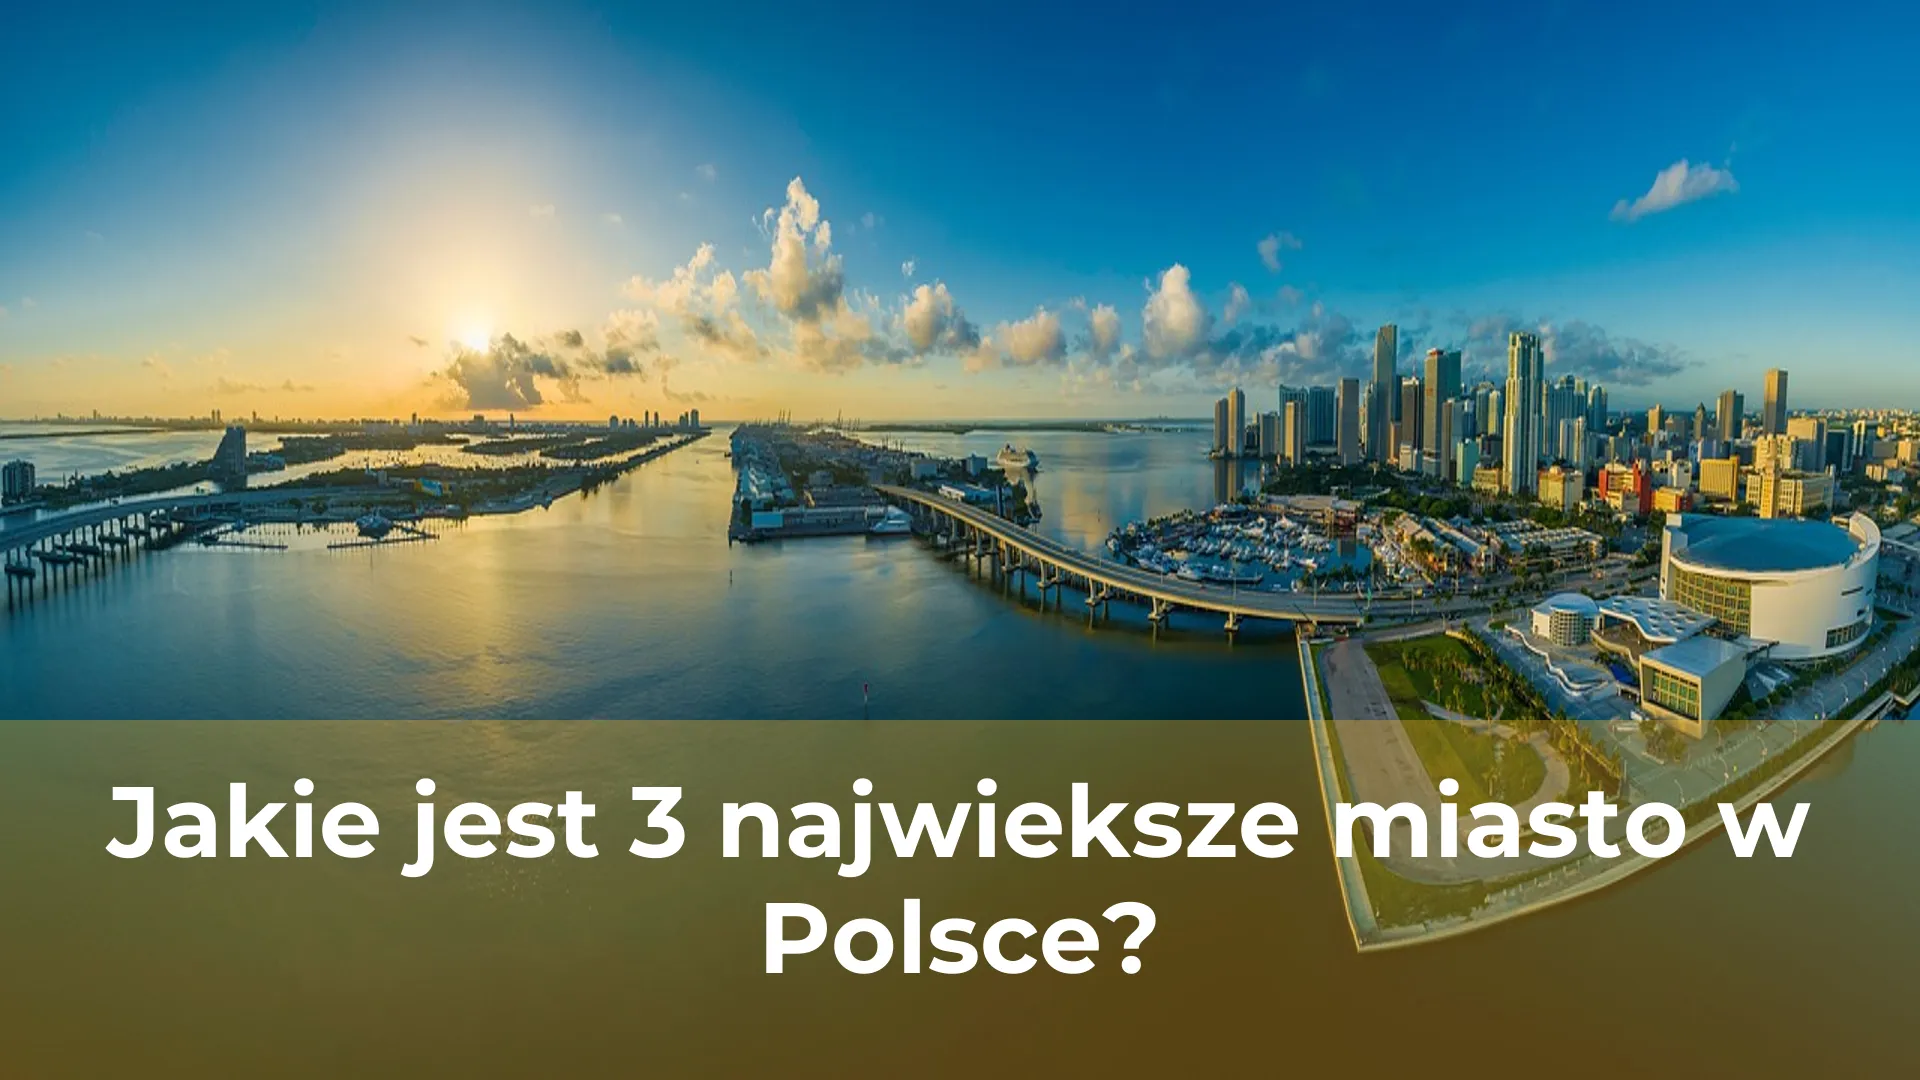 Jakie jest 3 najwieksze miasto w polsce